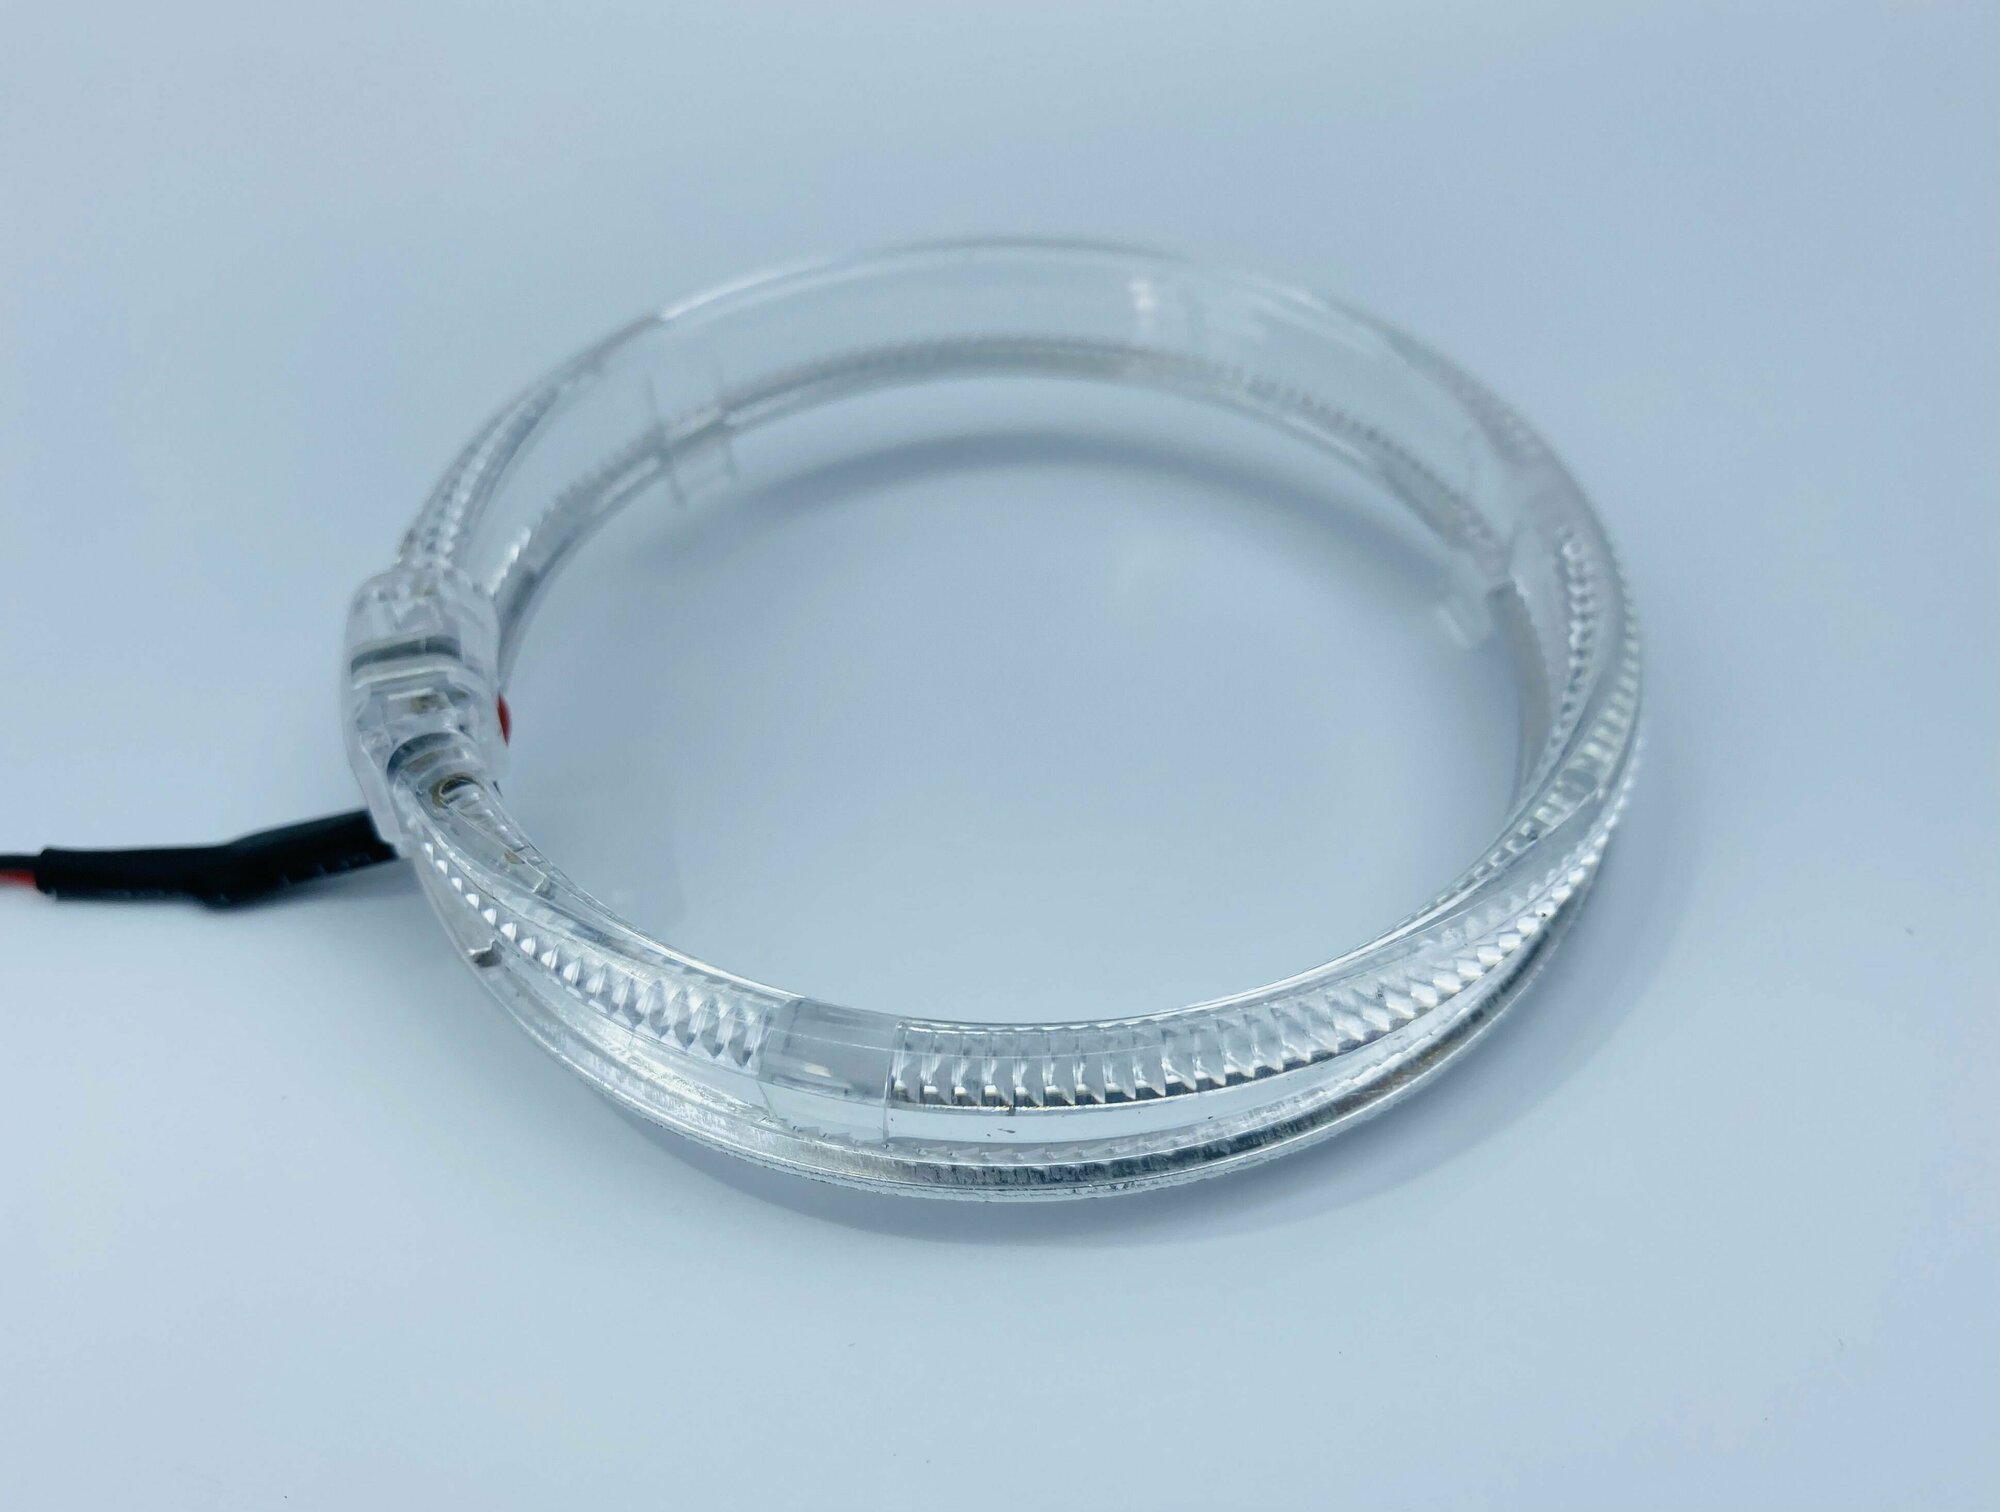 Диодные габариты (кольца) - "Ангельские глазки" Crystal, со световодом и режимом притухания, 12-24V, ф-95мм, для бленд (масок) 3.0", комплект 2шт